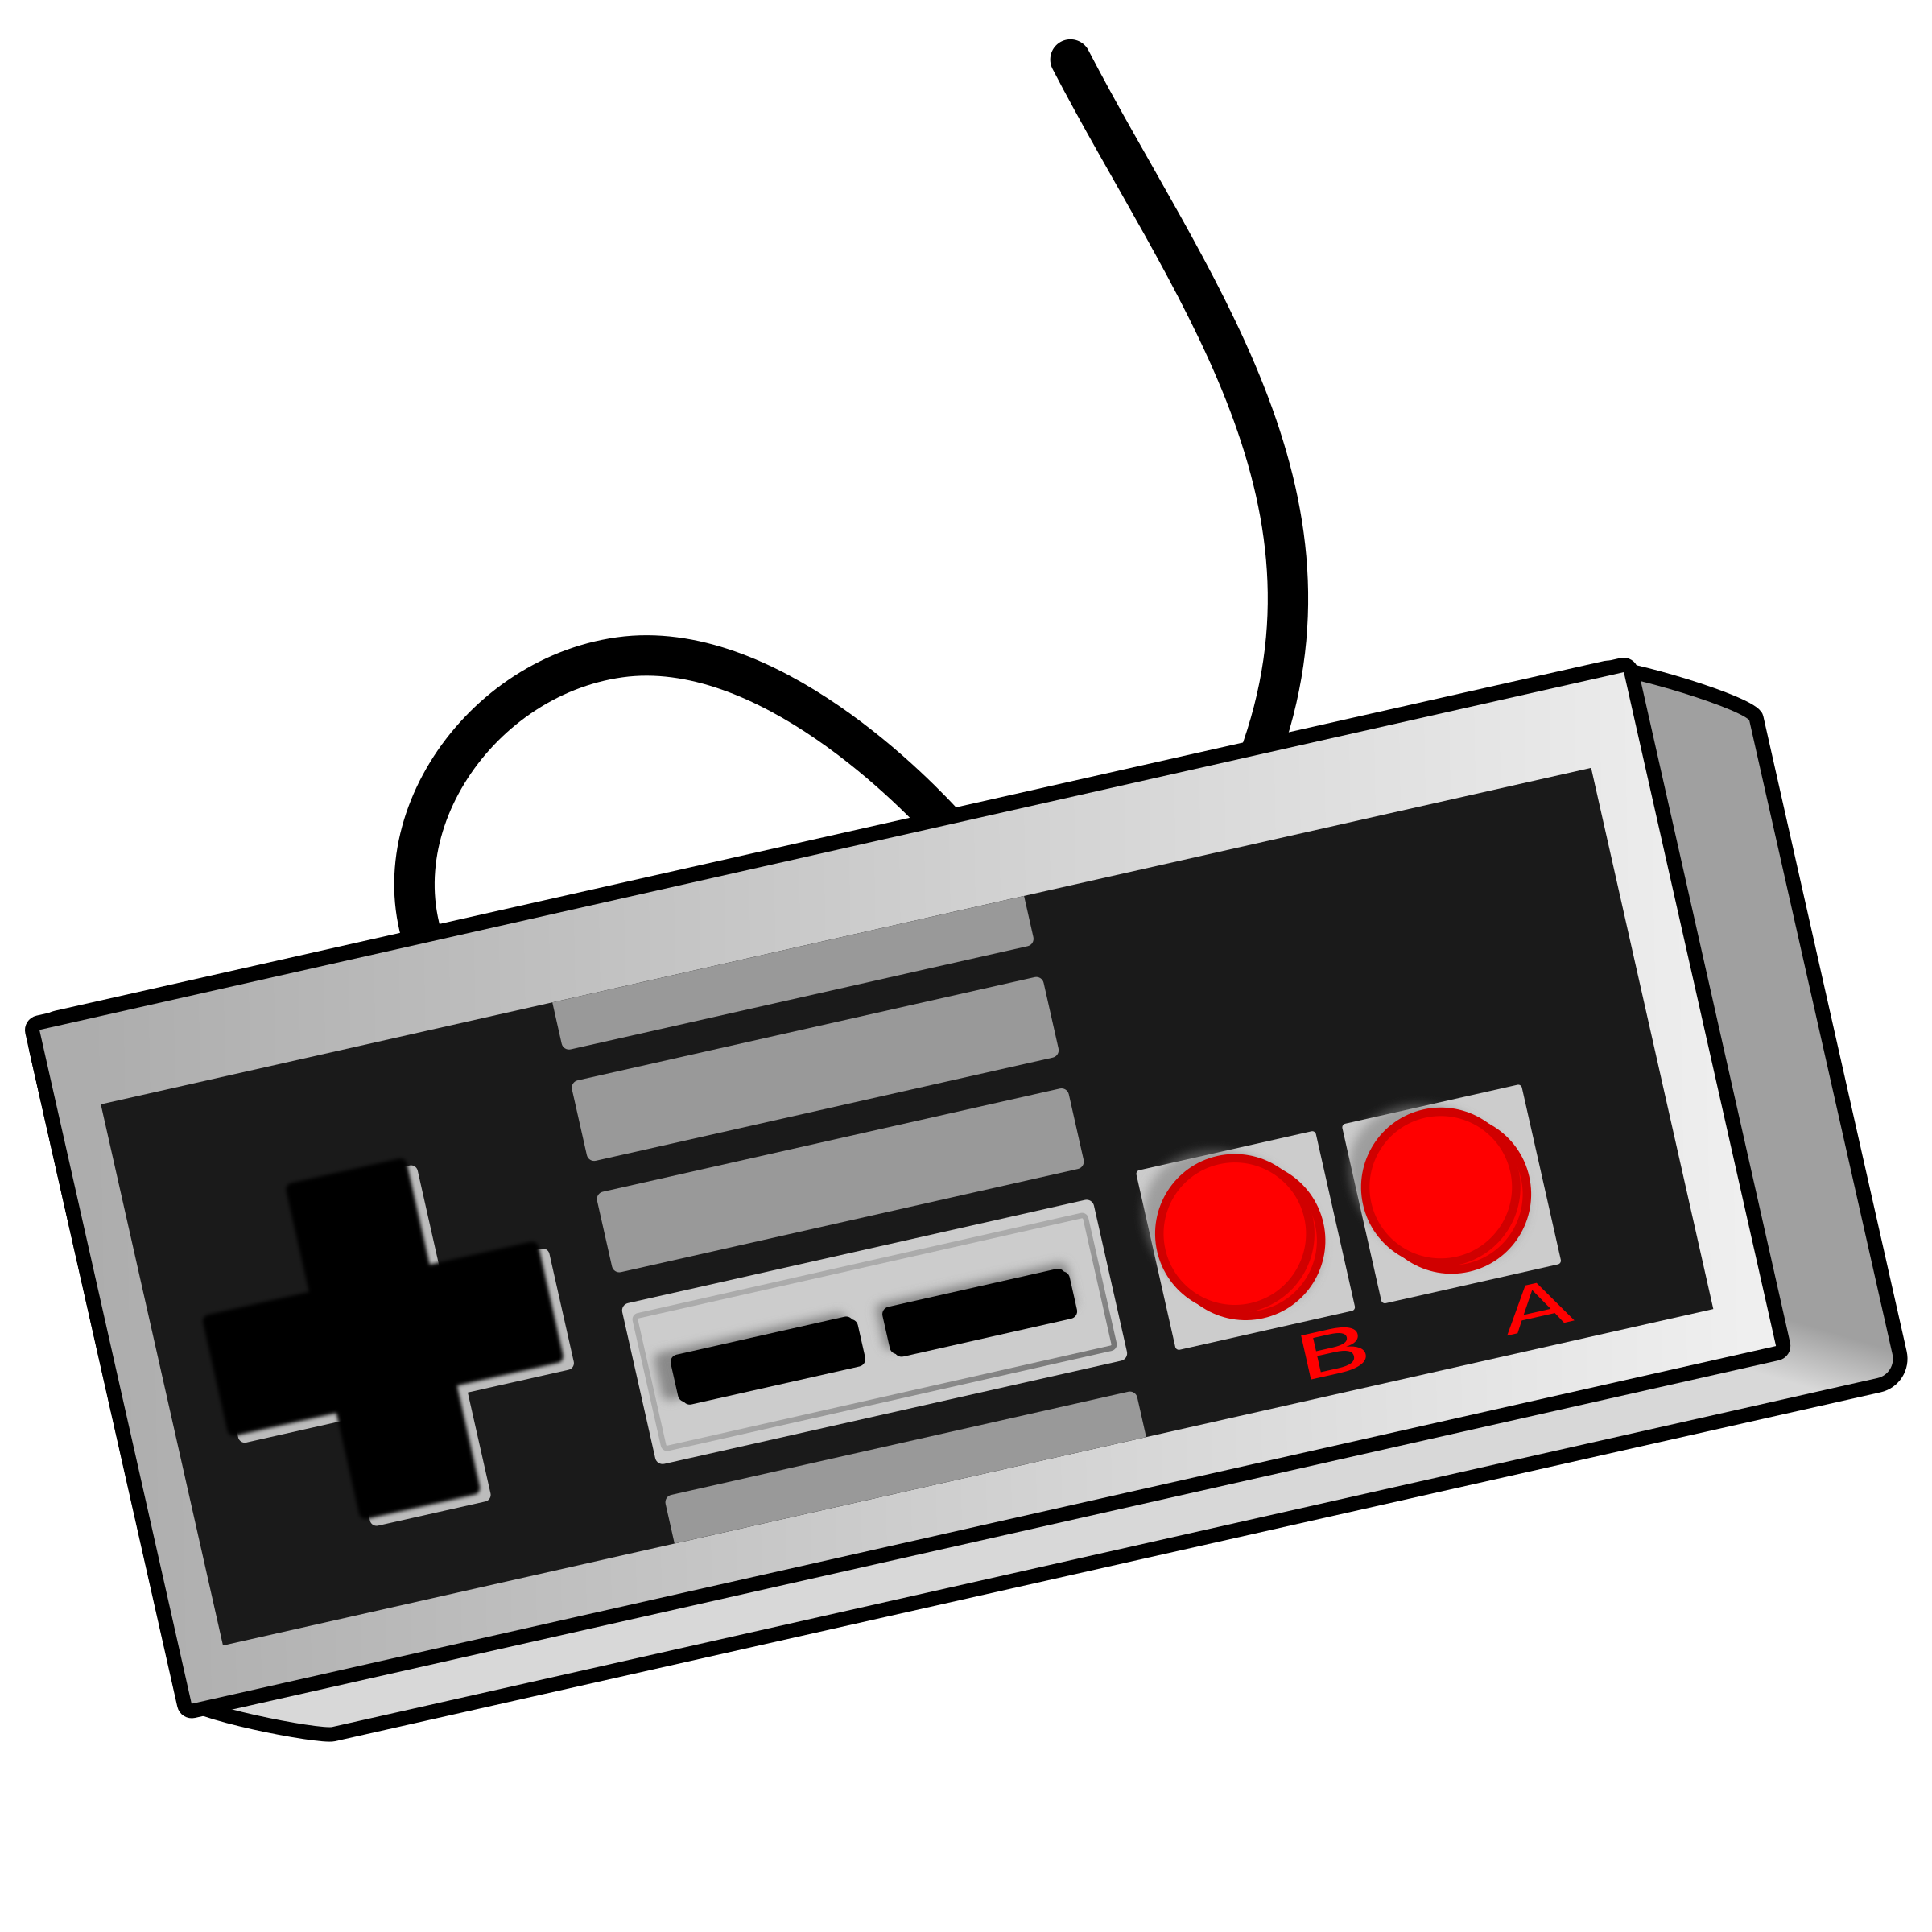 8 bit video game clip art - Video Game Controller Clip Art